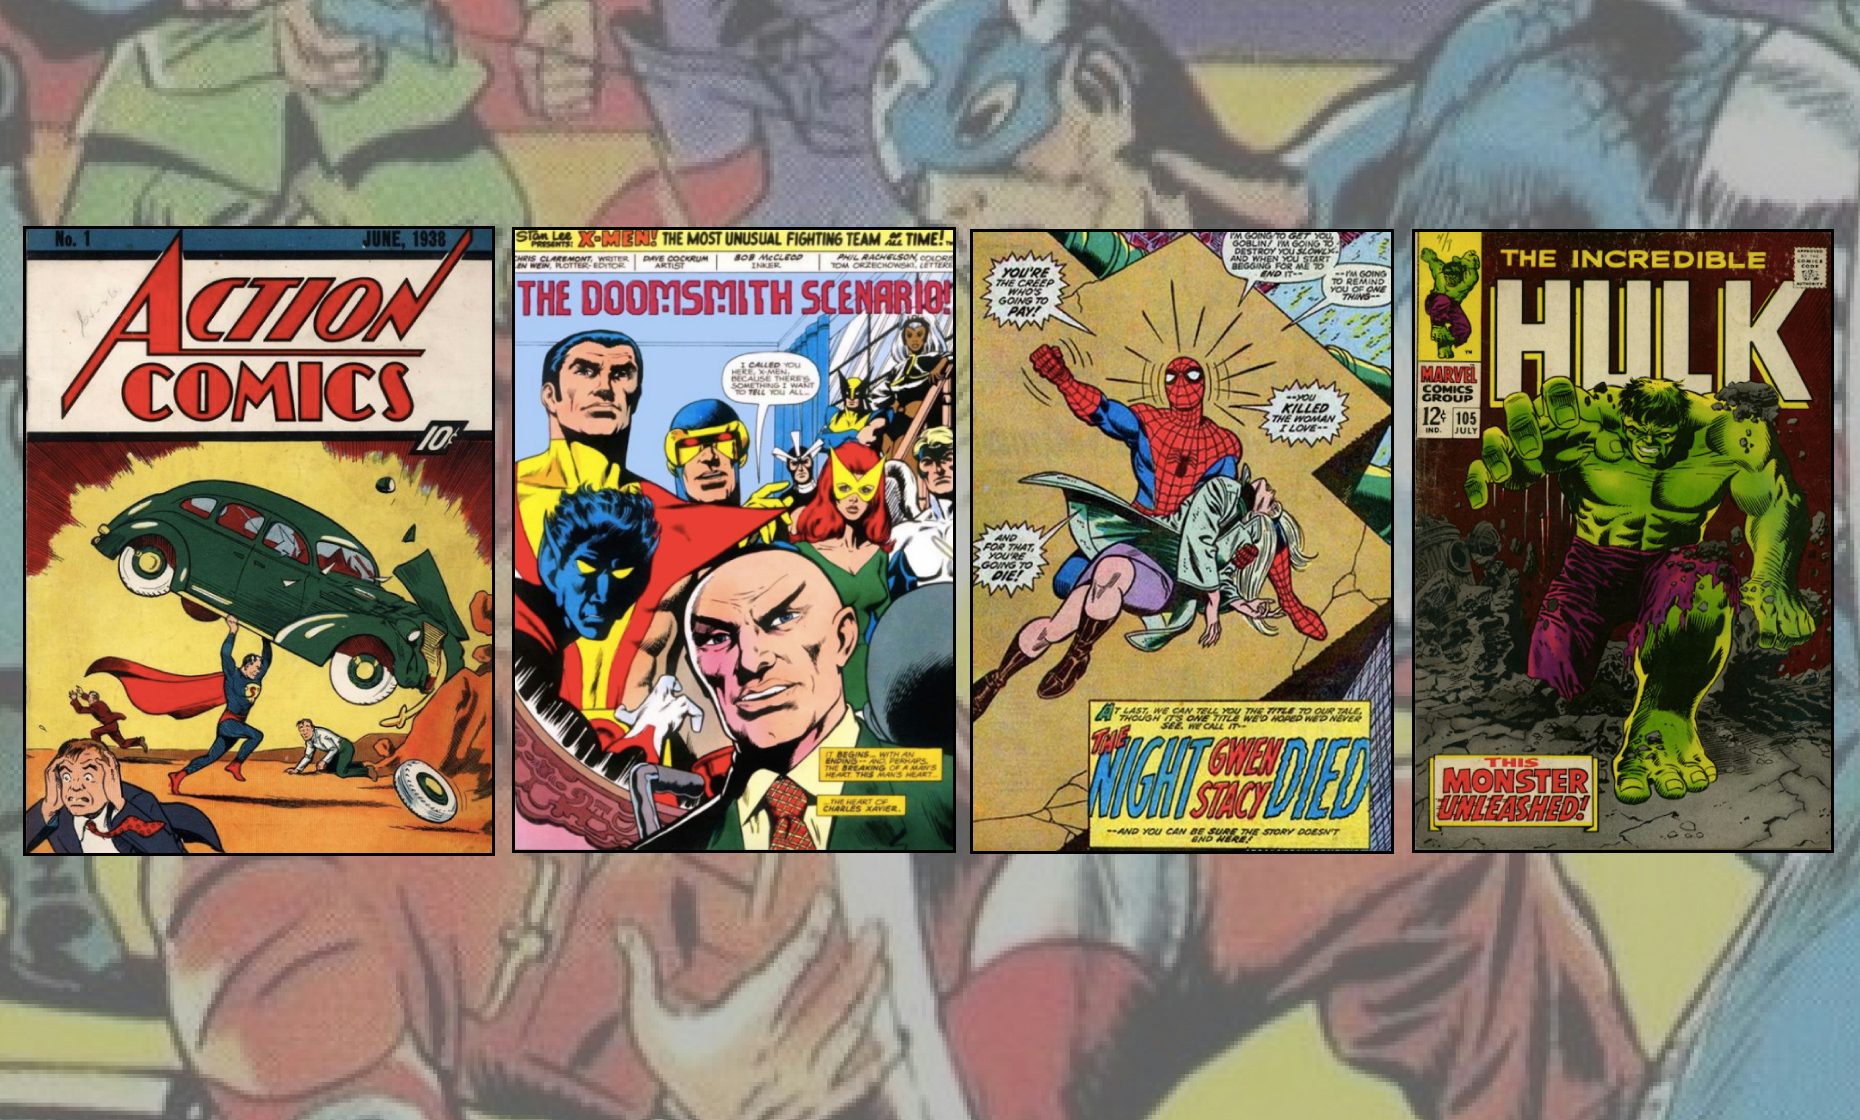 MAKING COMICS: TOOLS (PART I) – Deconstructing Comics